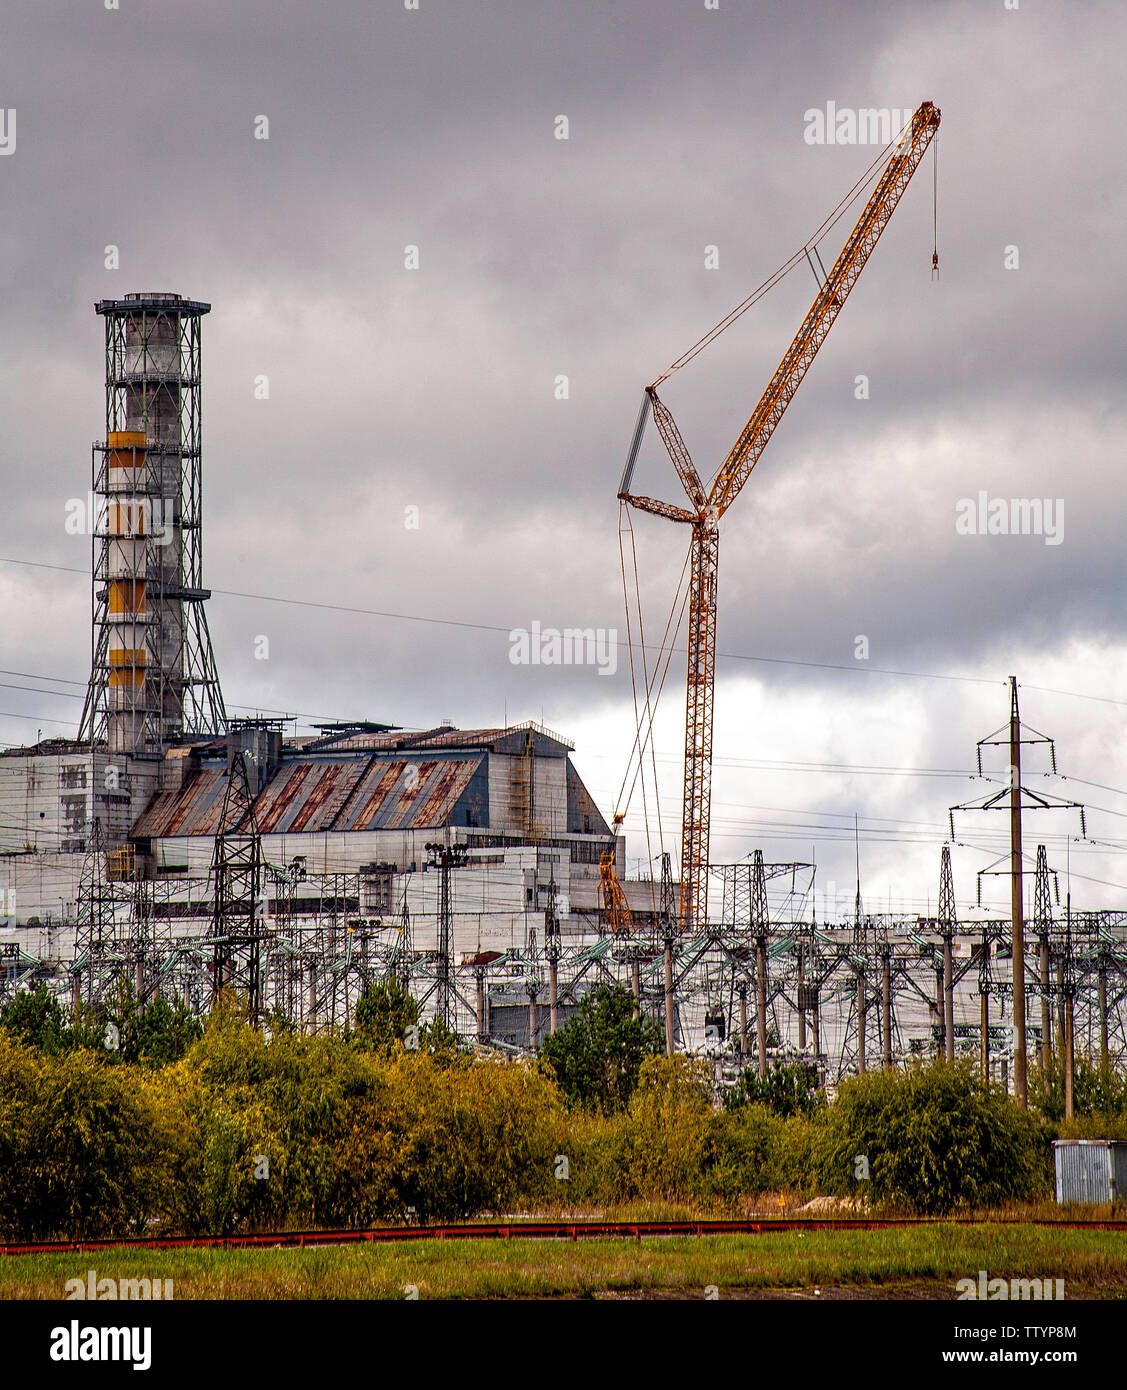 Reaktor 4. Der Reaktor, der Feuer gefangen, die atomare Katastrophe von Tschernobyl verursacht im Jahr 1986. Dies war eines von 6 Reaktoren in einer Reihe, Fronting auf einen künstlichen See, mit dem Wasser suppiled von der Pripryat River. Die Zahl der direkten und indirekten Todesfälle, die durch diese Katastrophe verursacht wurde nie offiziell erklärt. Es gibt noch 2 Ausgrenzung Zonen über 30 Jahre später. Der Bereich wird nie wieder dasselbe sein. Tschernobyl liegt im Norden der Ukraine, in der Nähe der modernen Grenzen mit Weißrussland und Russland. Als der wichtigste Faktor für das Scheitern der Berliner Mauer aufgestellt. Die Kosten waren enorm. Stockfoto